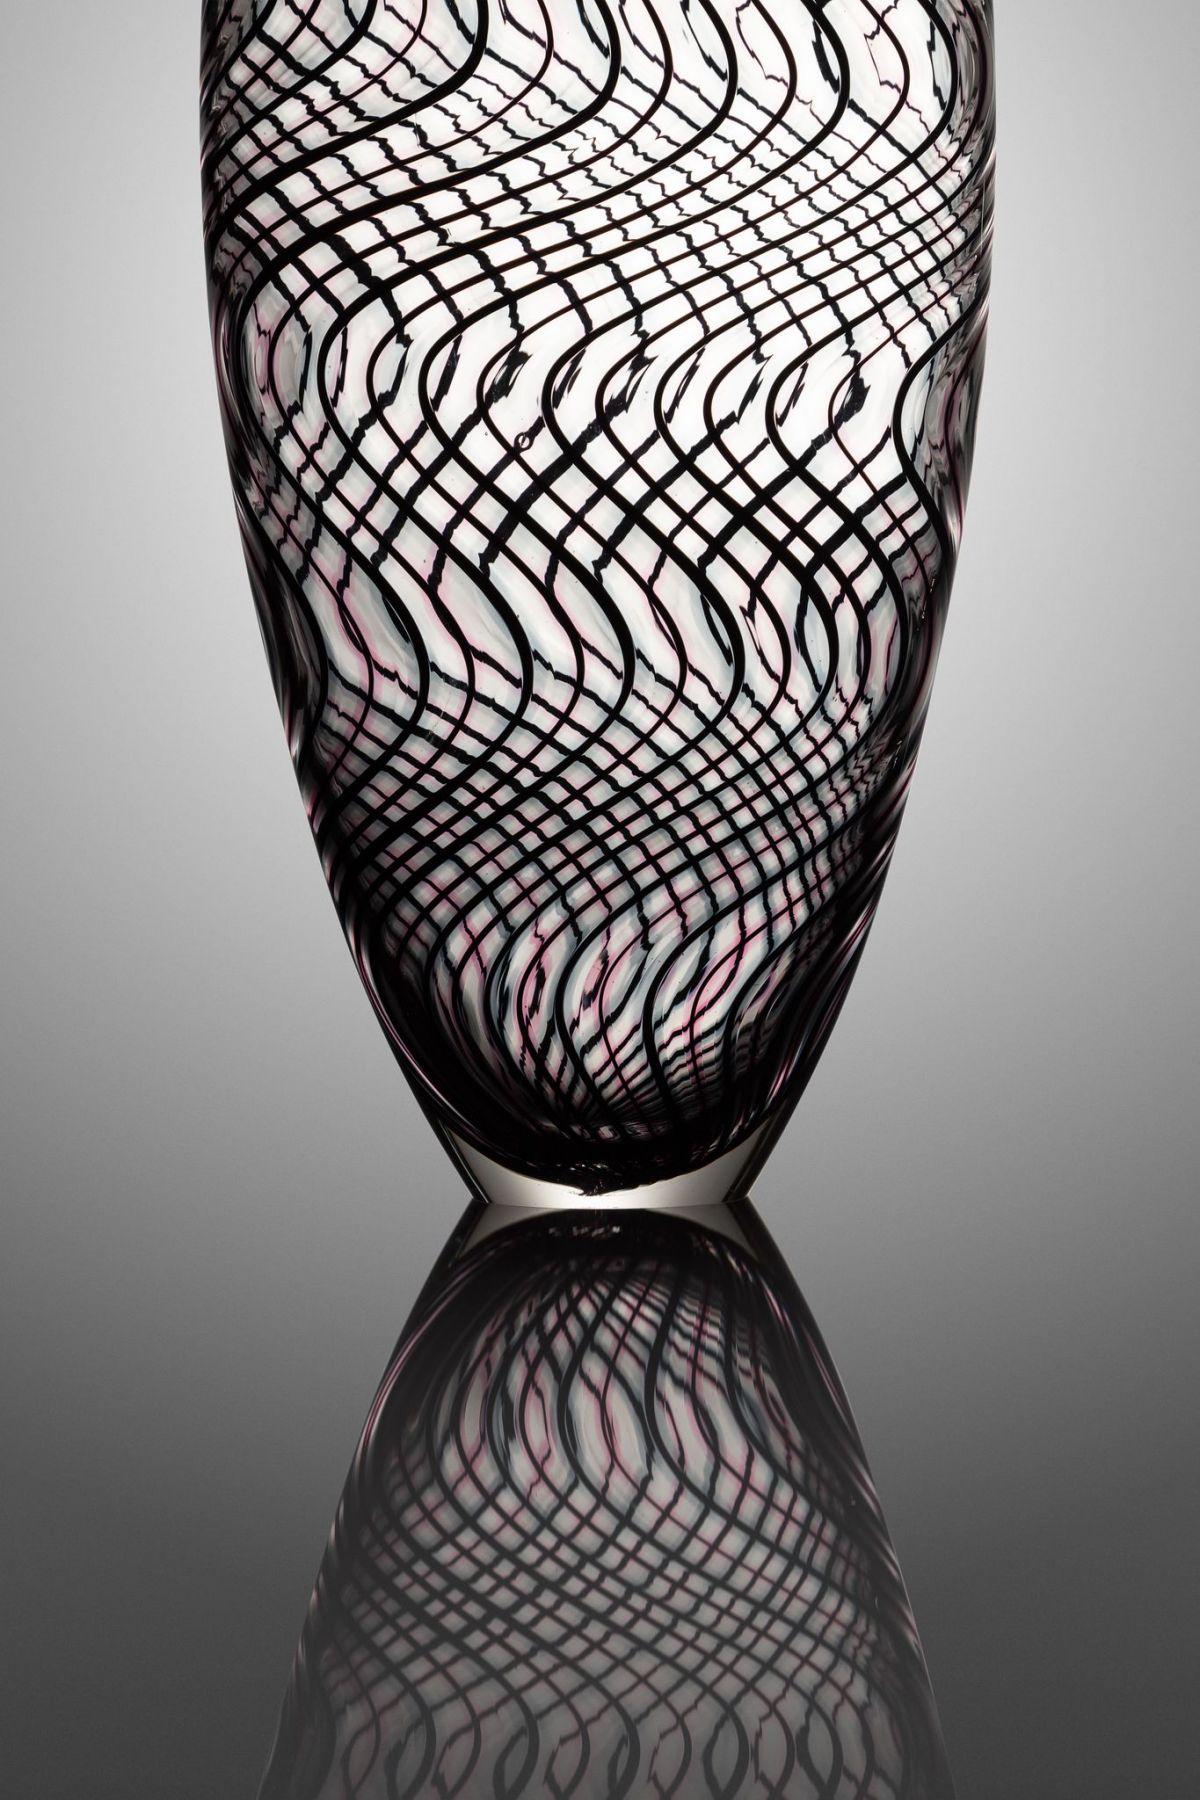 Michael Cozza ist ein Glaskünstler, der in Seattle, Washington, lebt und arbeitet. Cozzas Arbeit konzentriert sich auf die Verwendung traditioneller venezianischer Techniken in Kombination mit einer zeitgenössischen Designästhetik. Sein besonderes